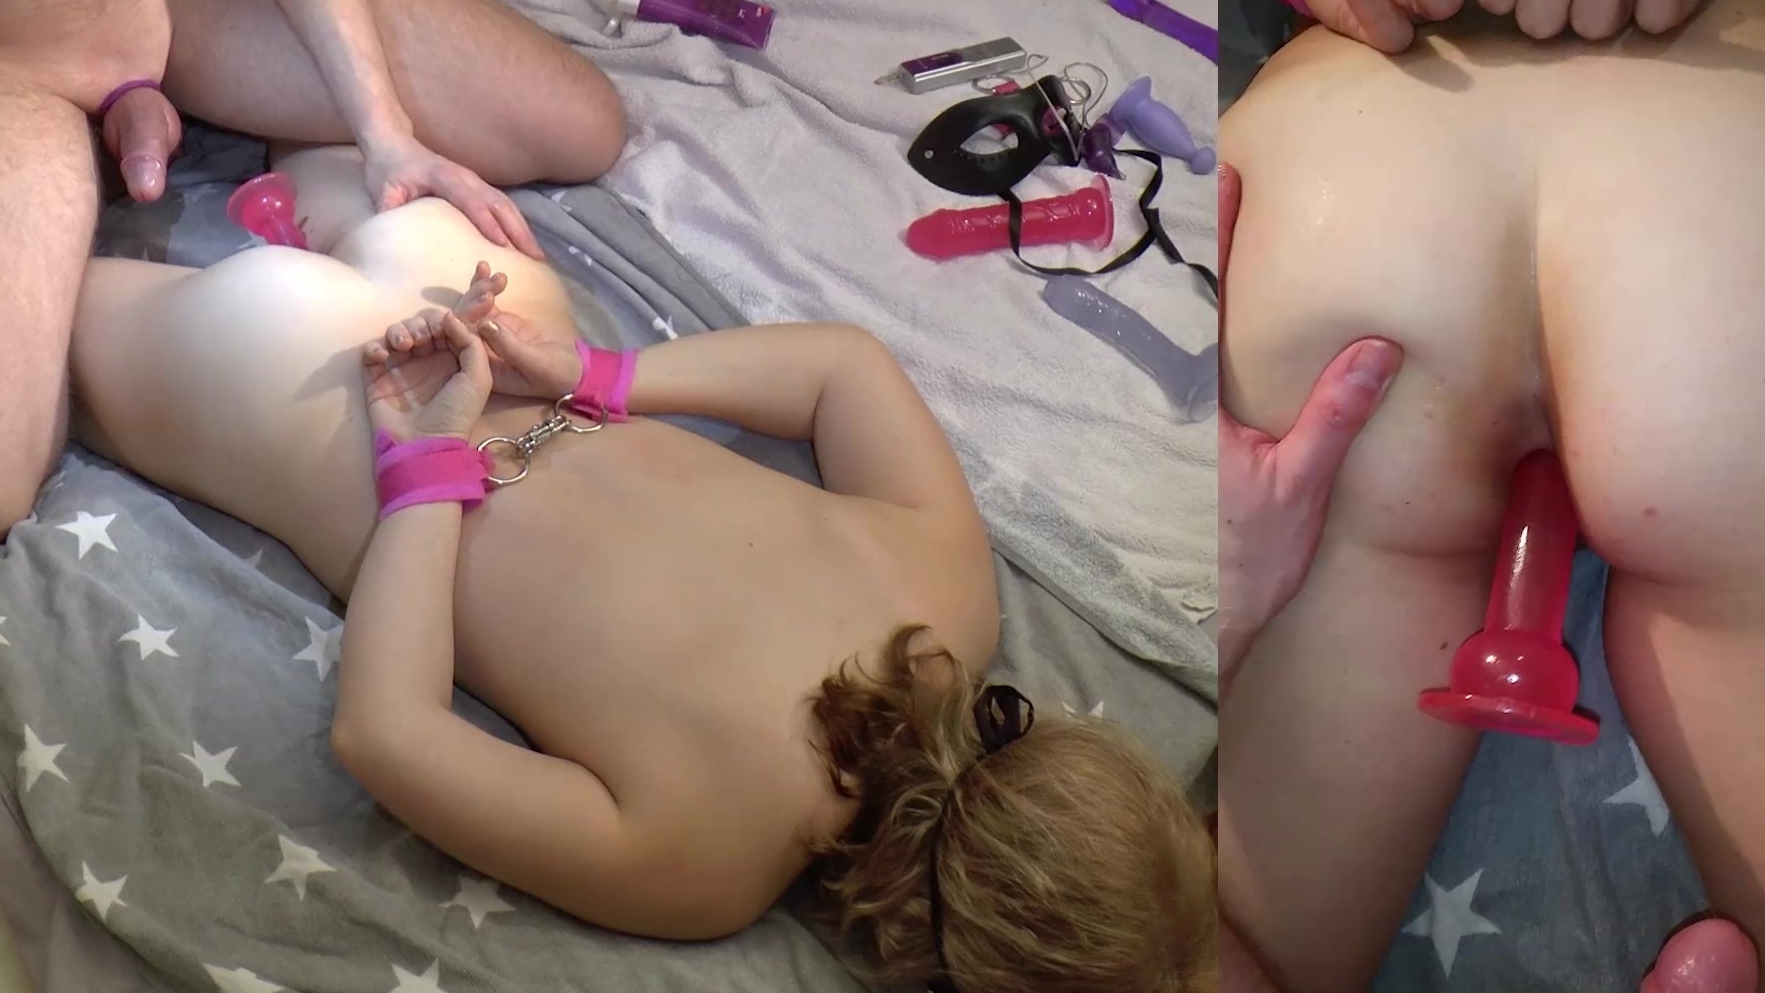 Amateursex auf dem Bett mit Handschellen, Spielzeug und einem fetten Schwanz